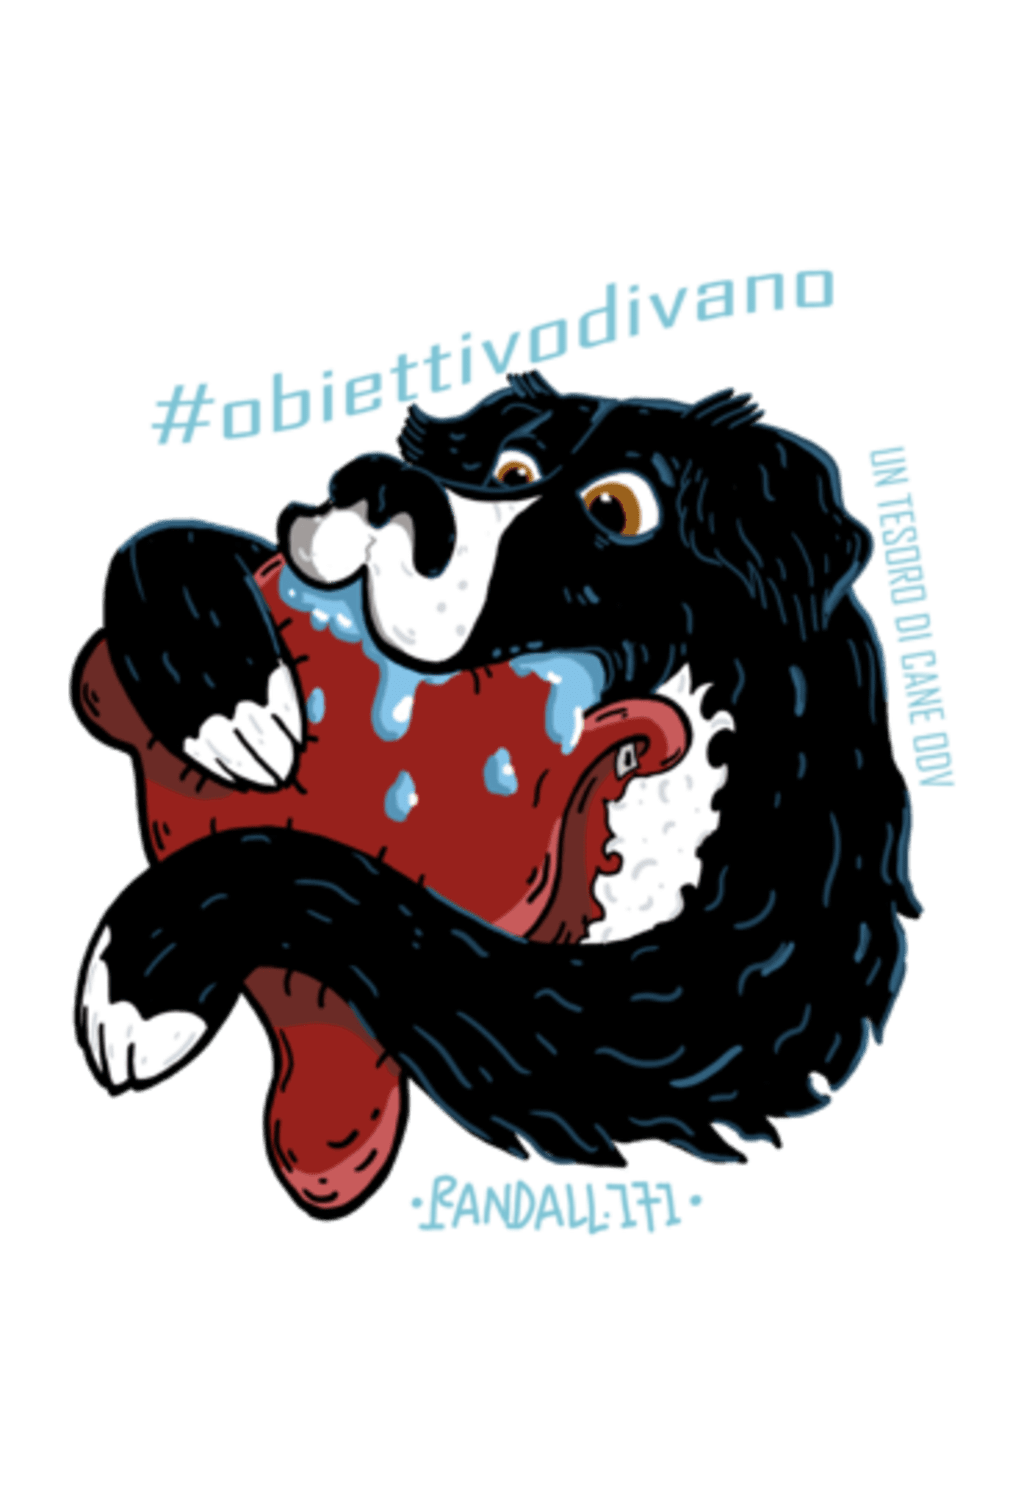 #obiettivodivano 8 - UN TESORO DI CANE ODV (artwork: Andrea Chiriatti)